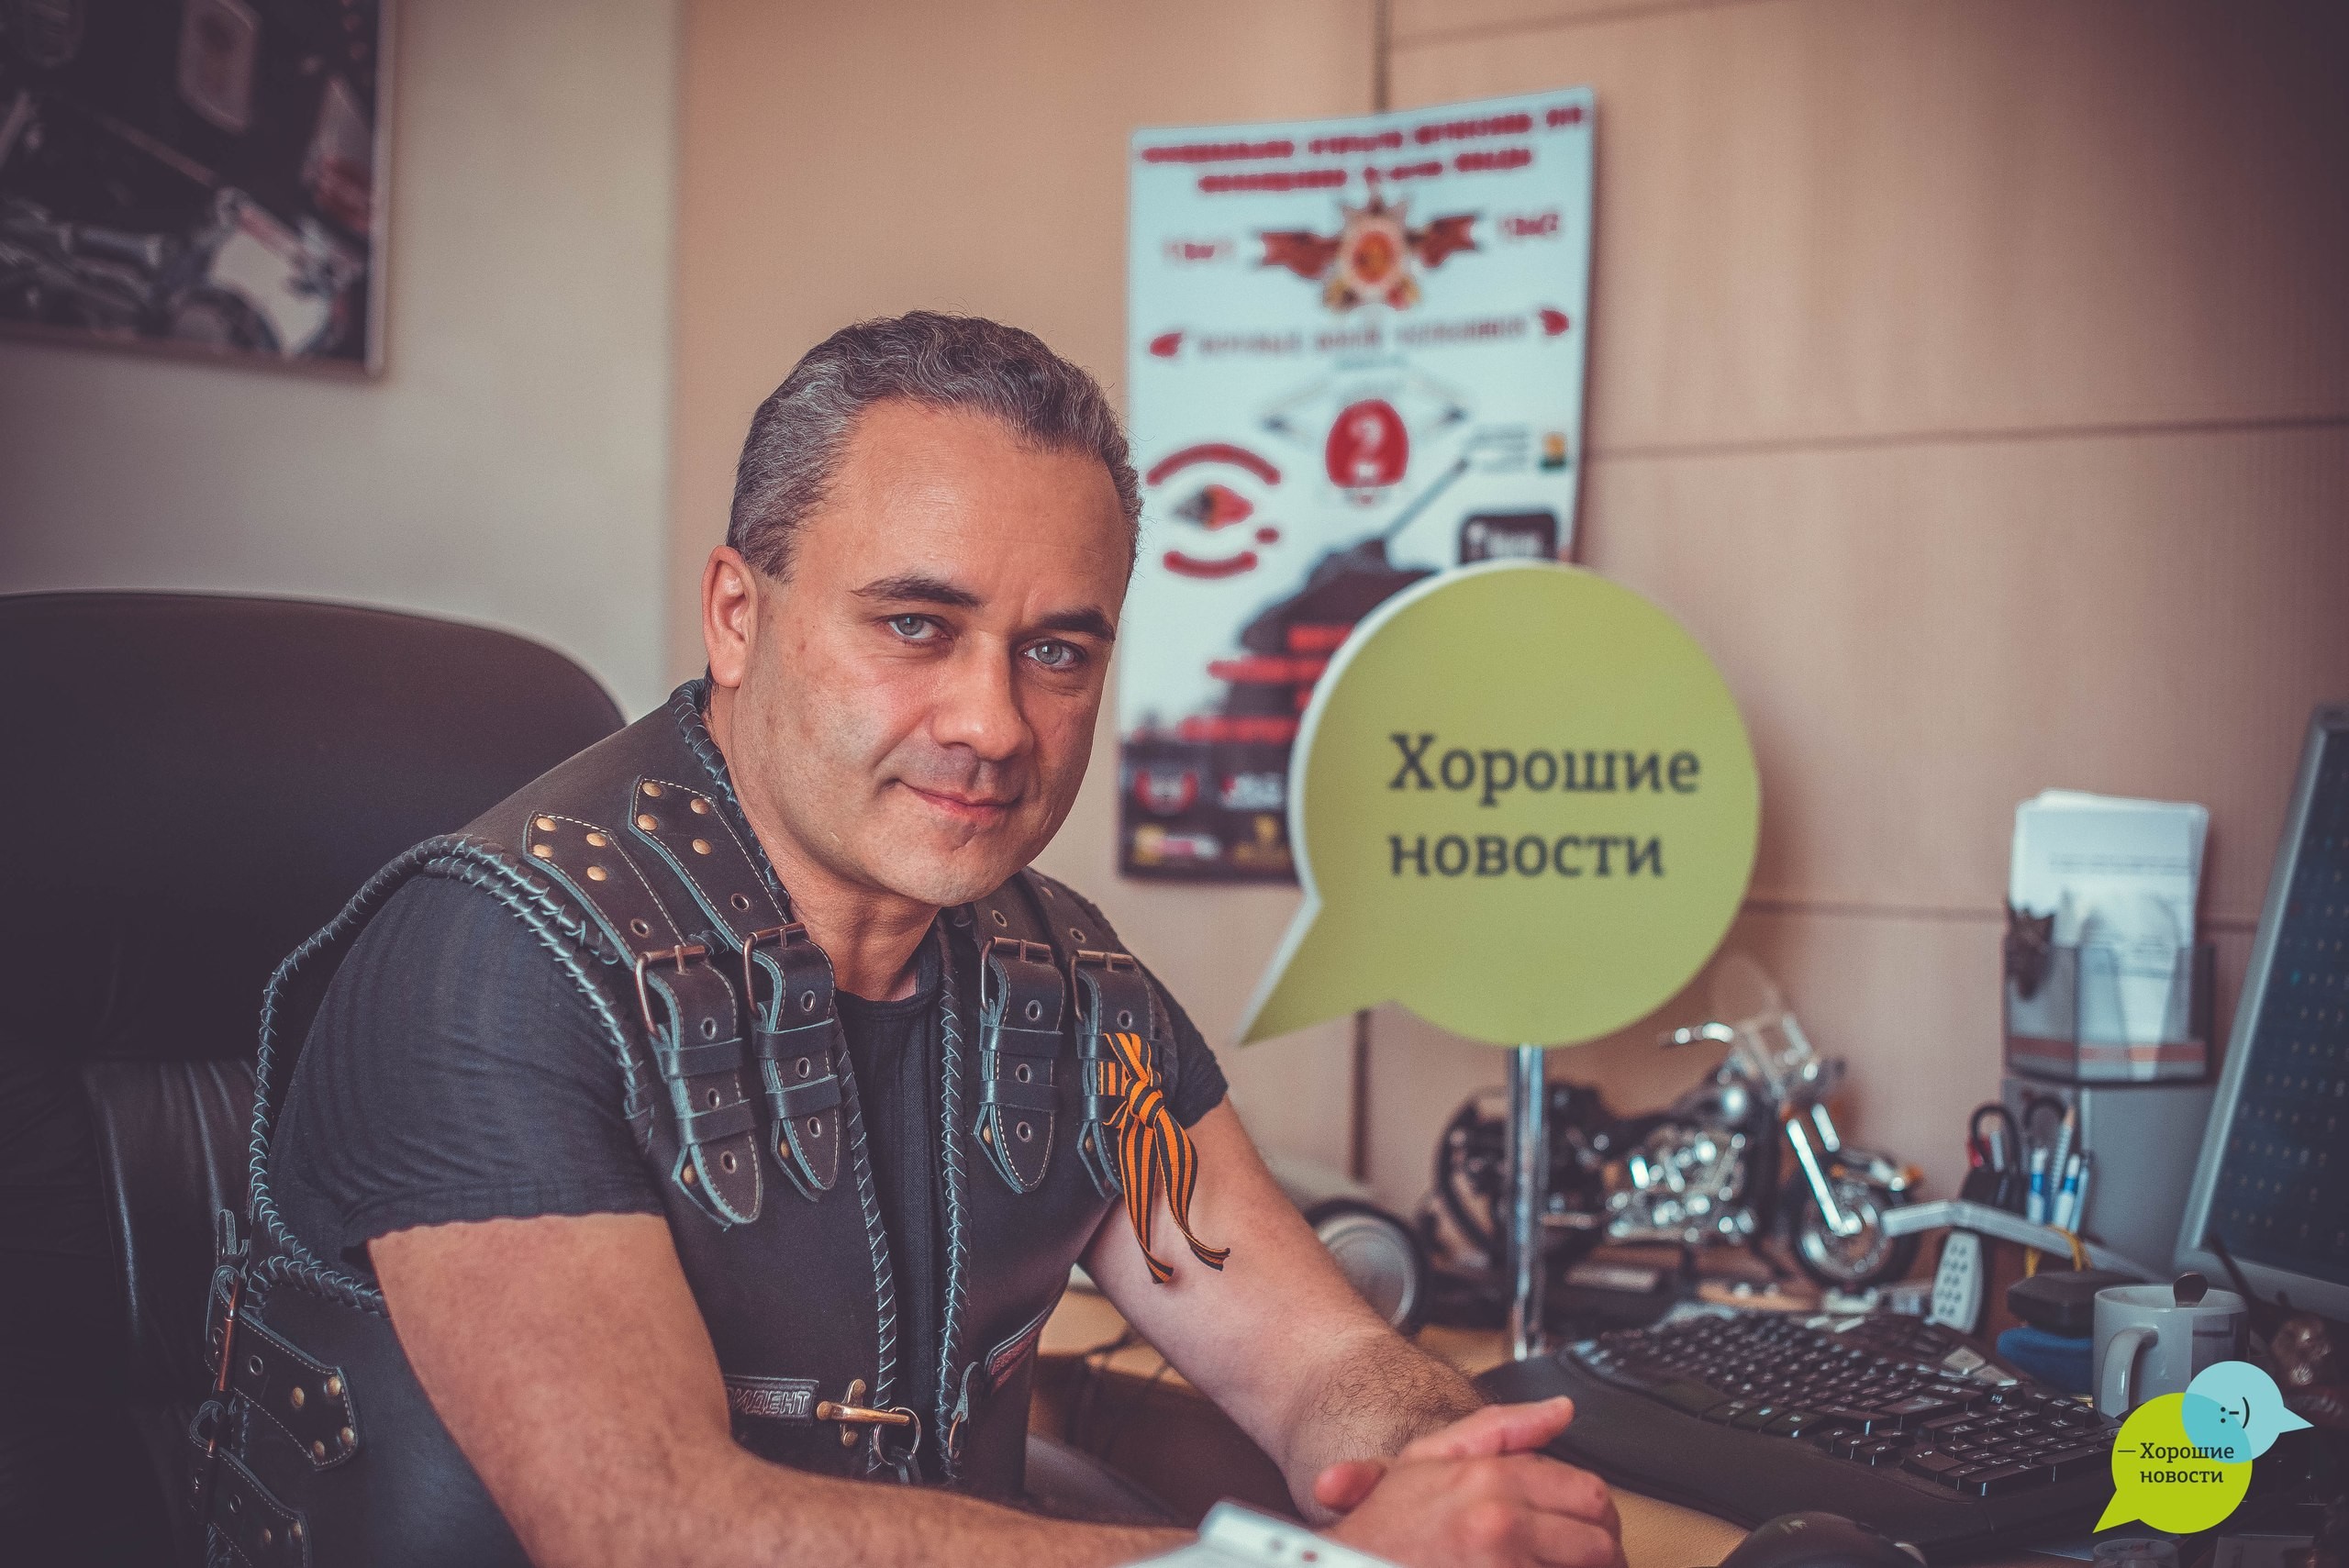 Игорь Черкезия: "Мы не байкеры, мы – русские мотоциклисты"